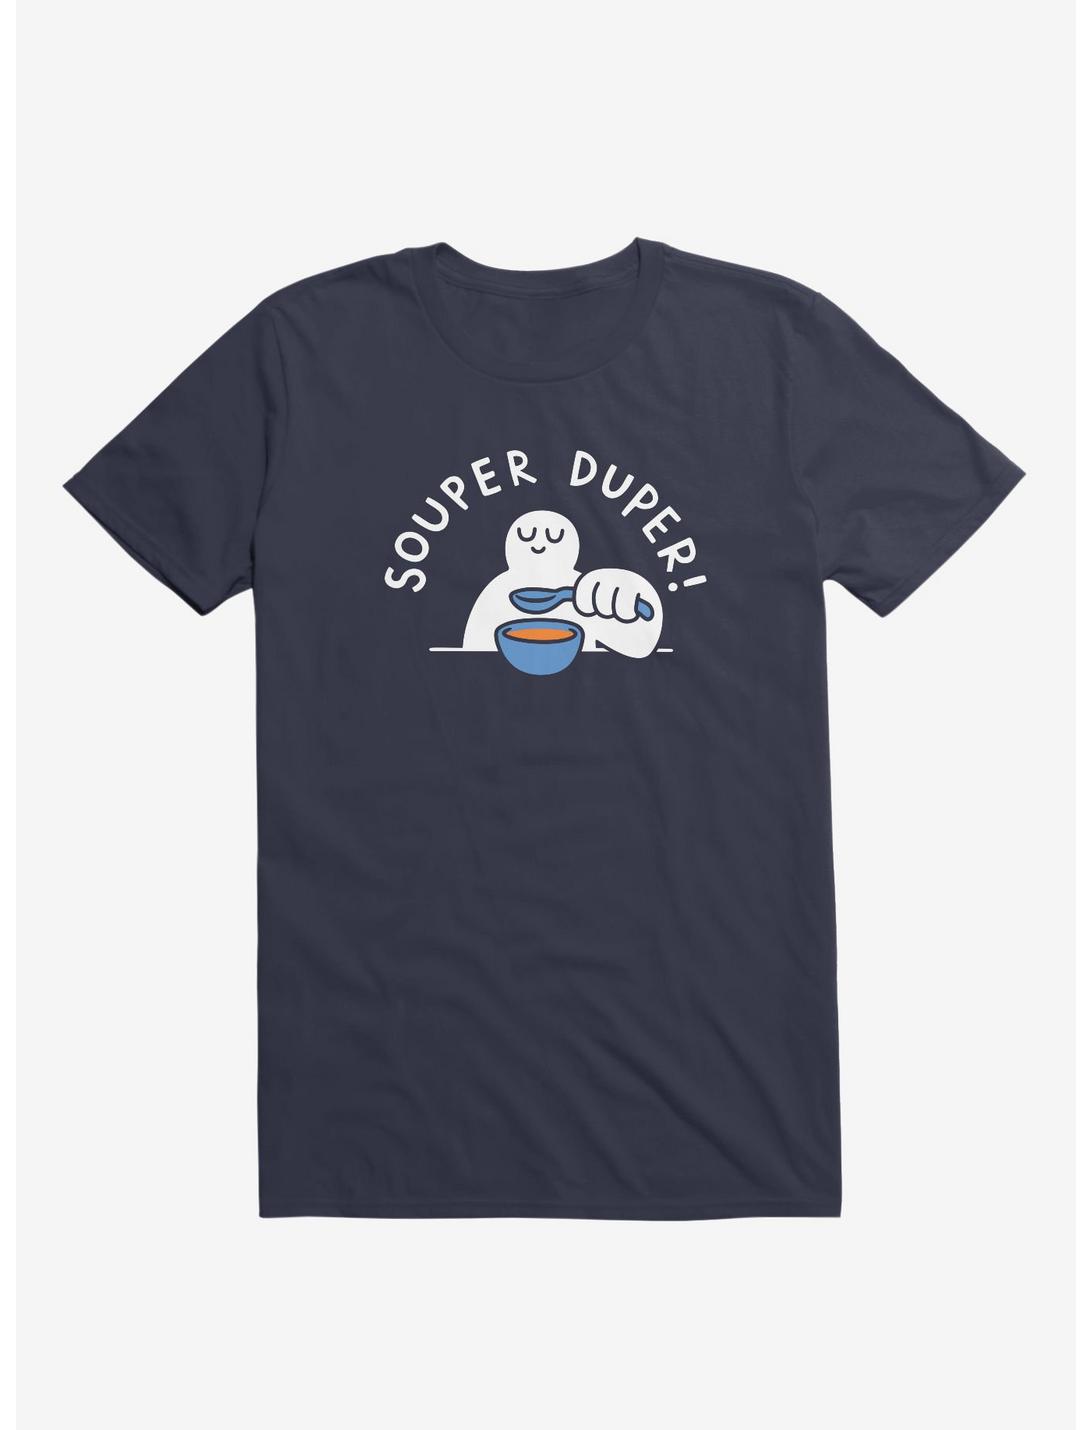 Souper Duper! T-Shirt, NAVY, hi-res